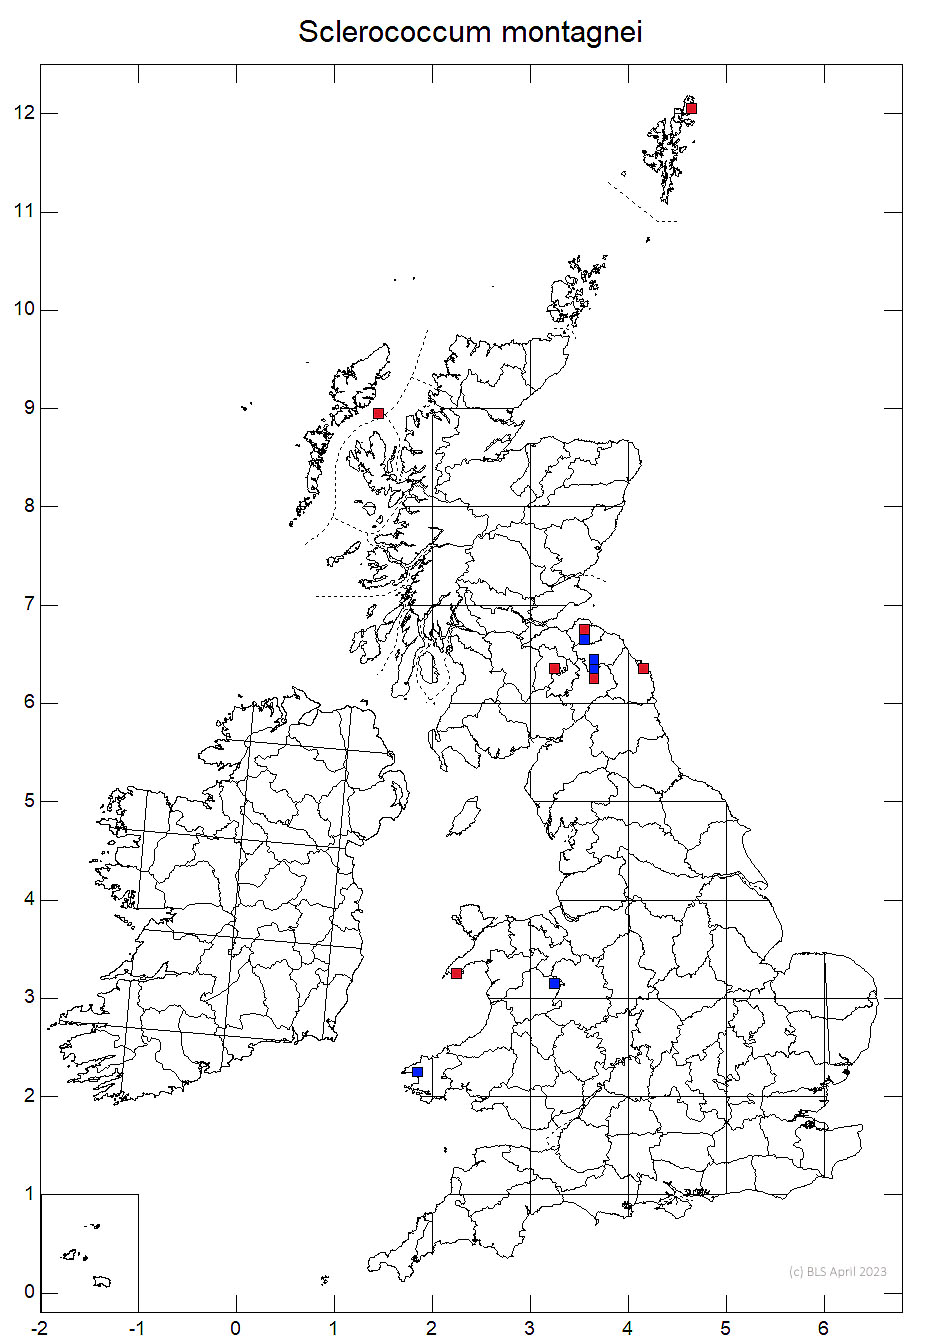 Sclerococcum montagnei 10km sq distribution map